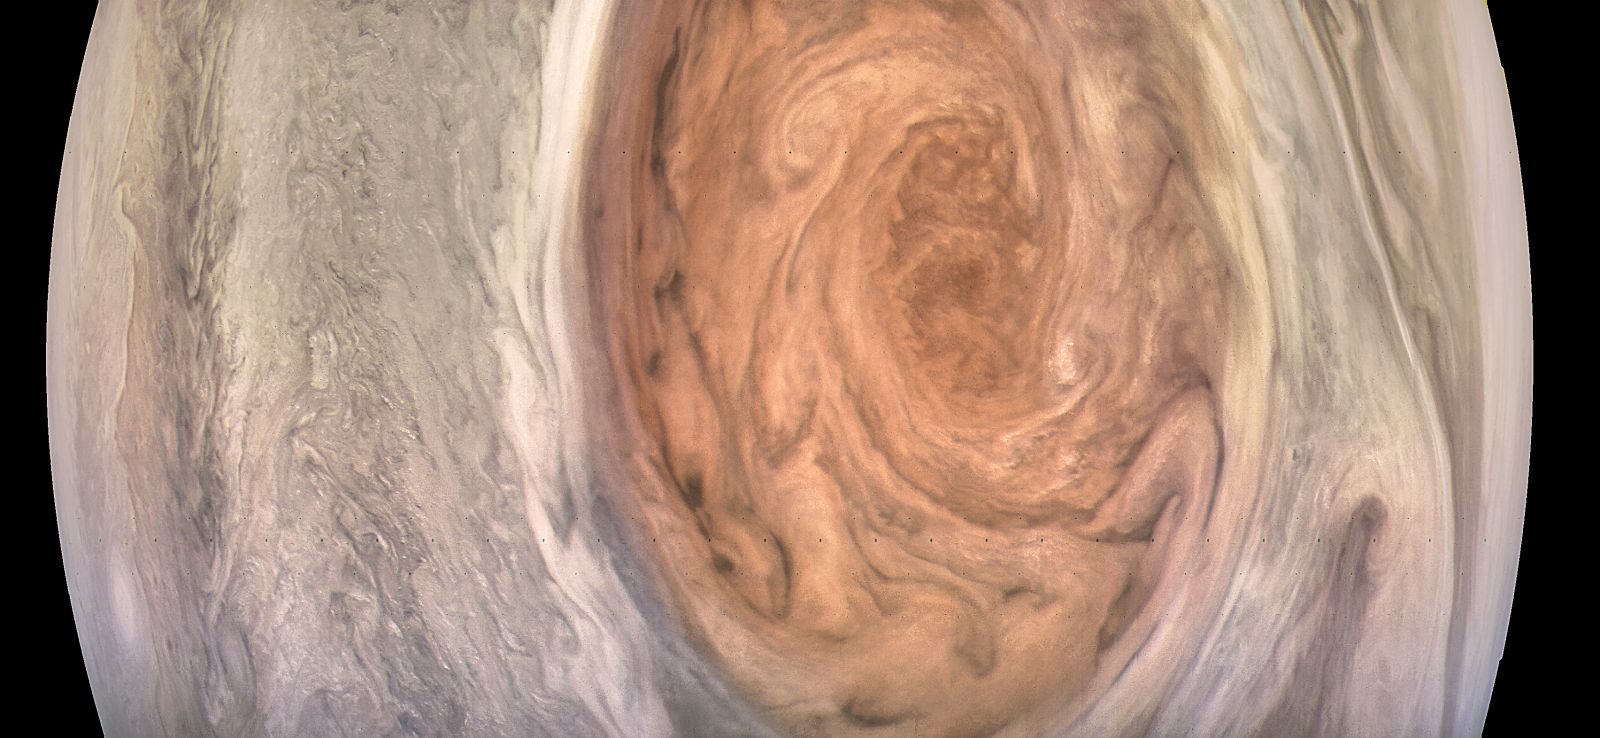 Космический зонд Juno прислал детальные снимки Большого красного пятна Юпитера - 2